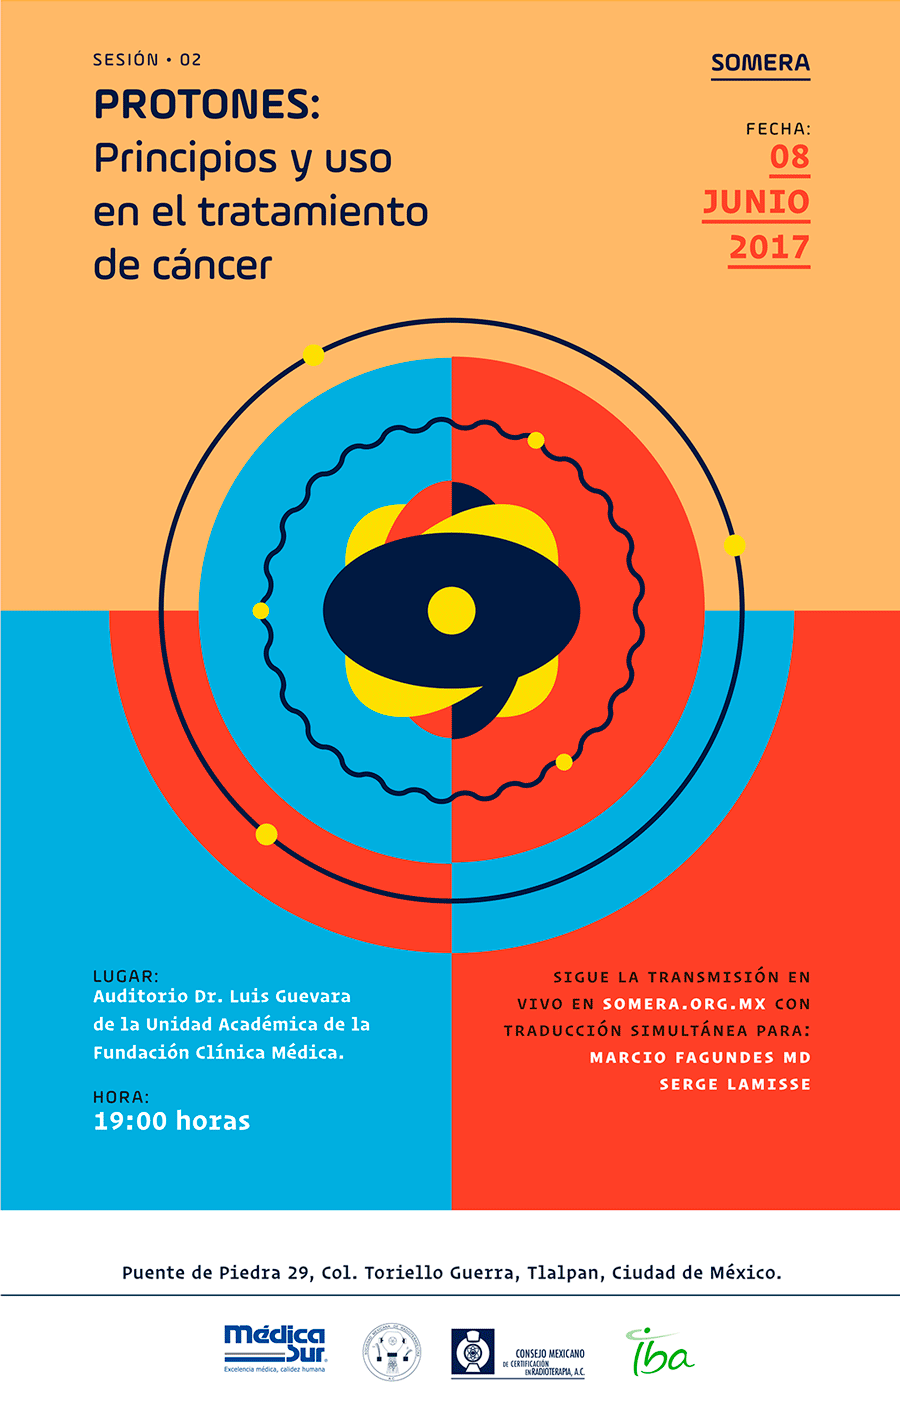 Invitación al evento de Somera: Protones, principios y uso en el tratamiento del cáncer